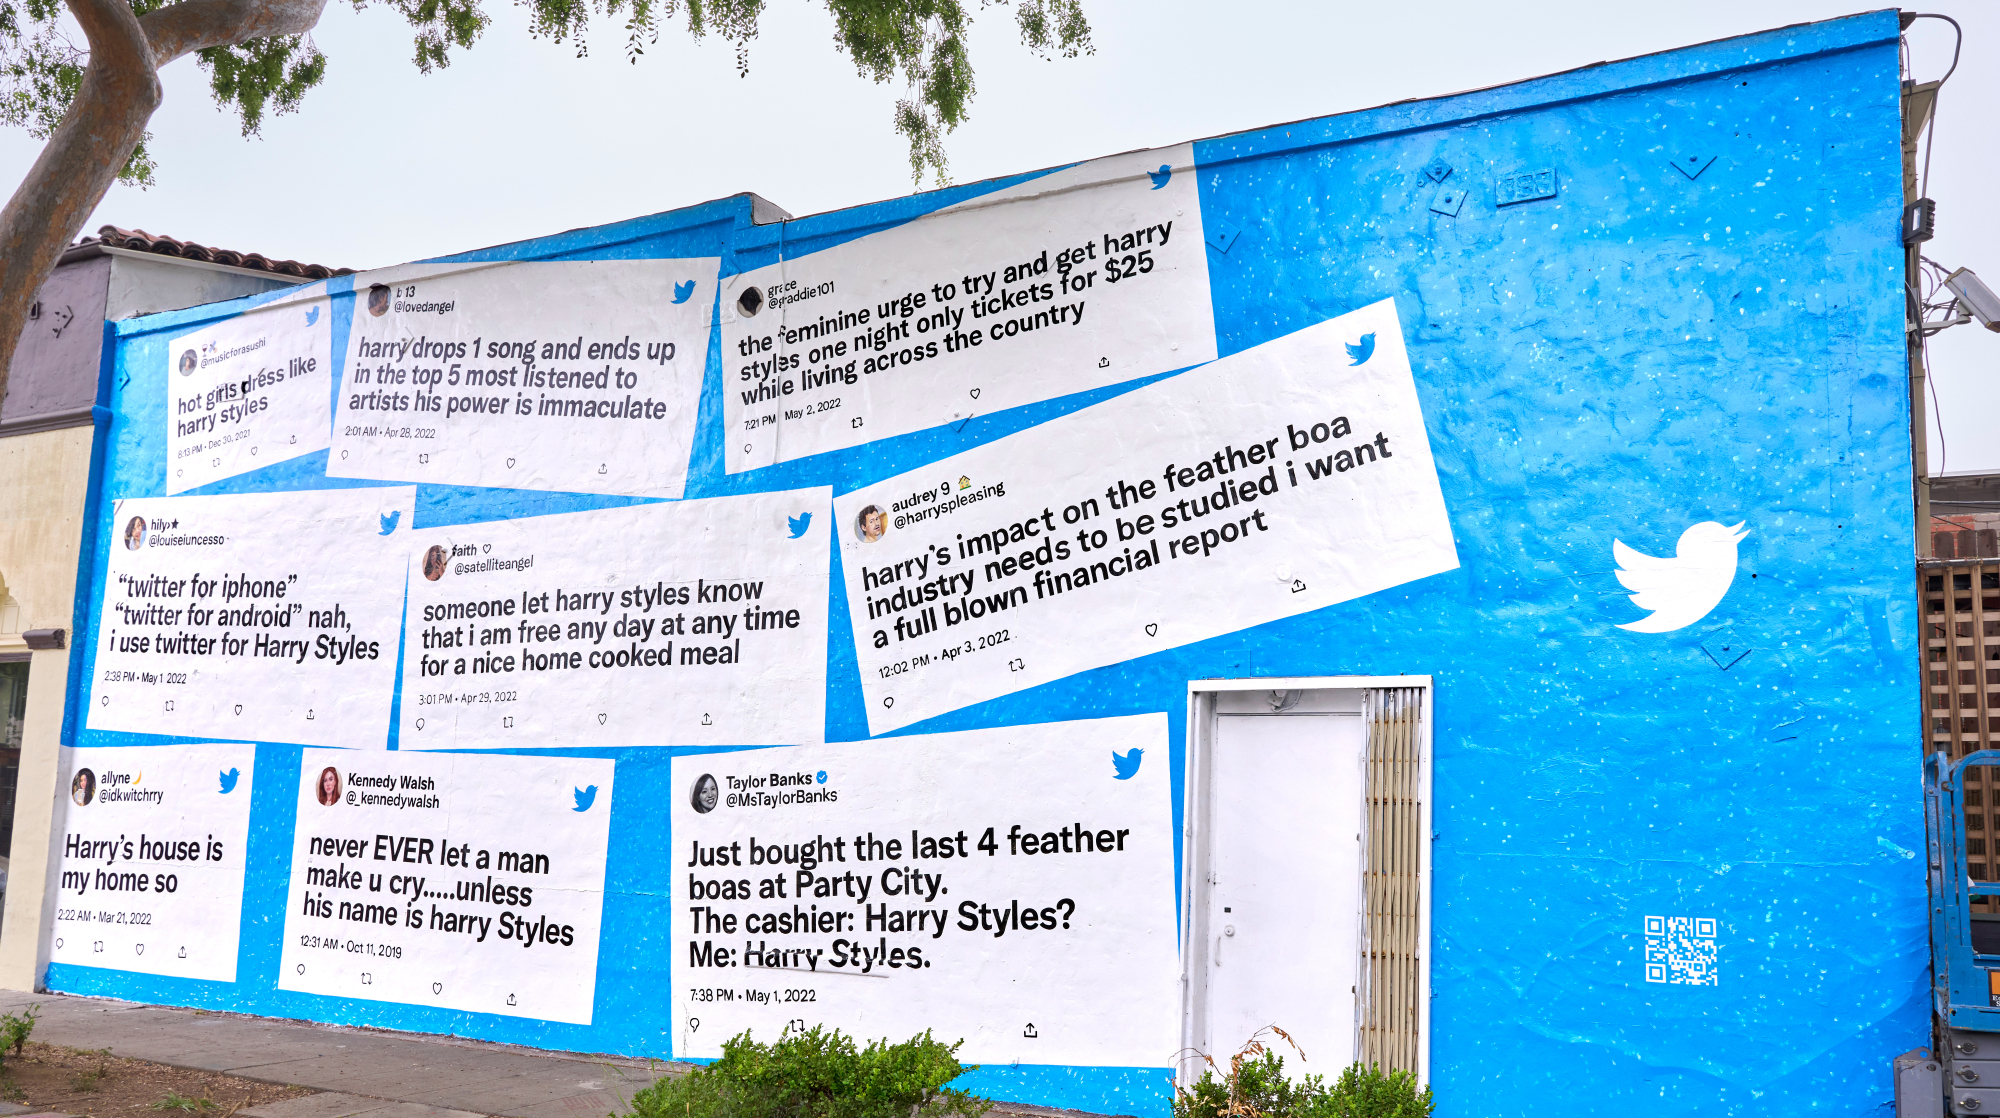 Peinture murale de Tweets sur les styles à Los Angeles. 